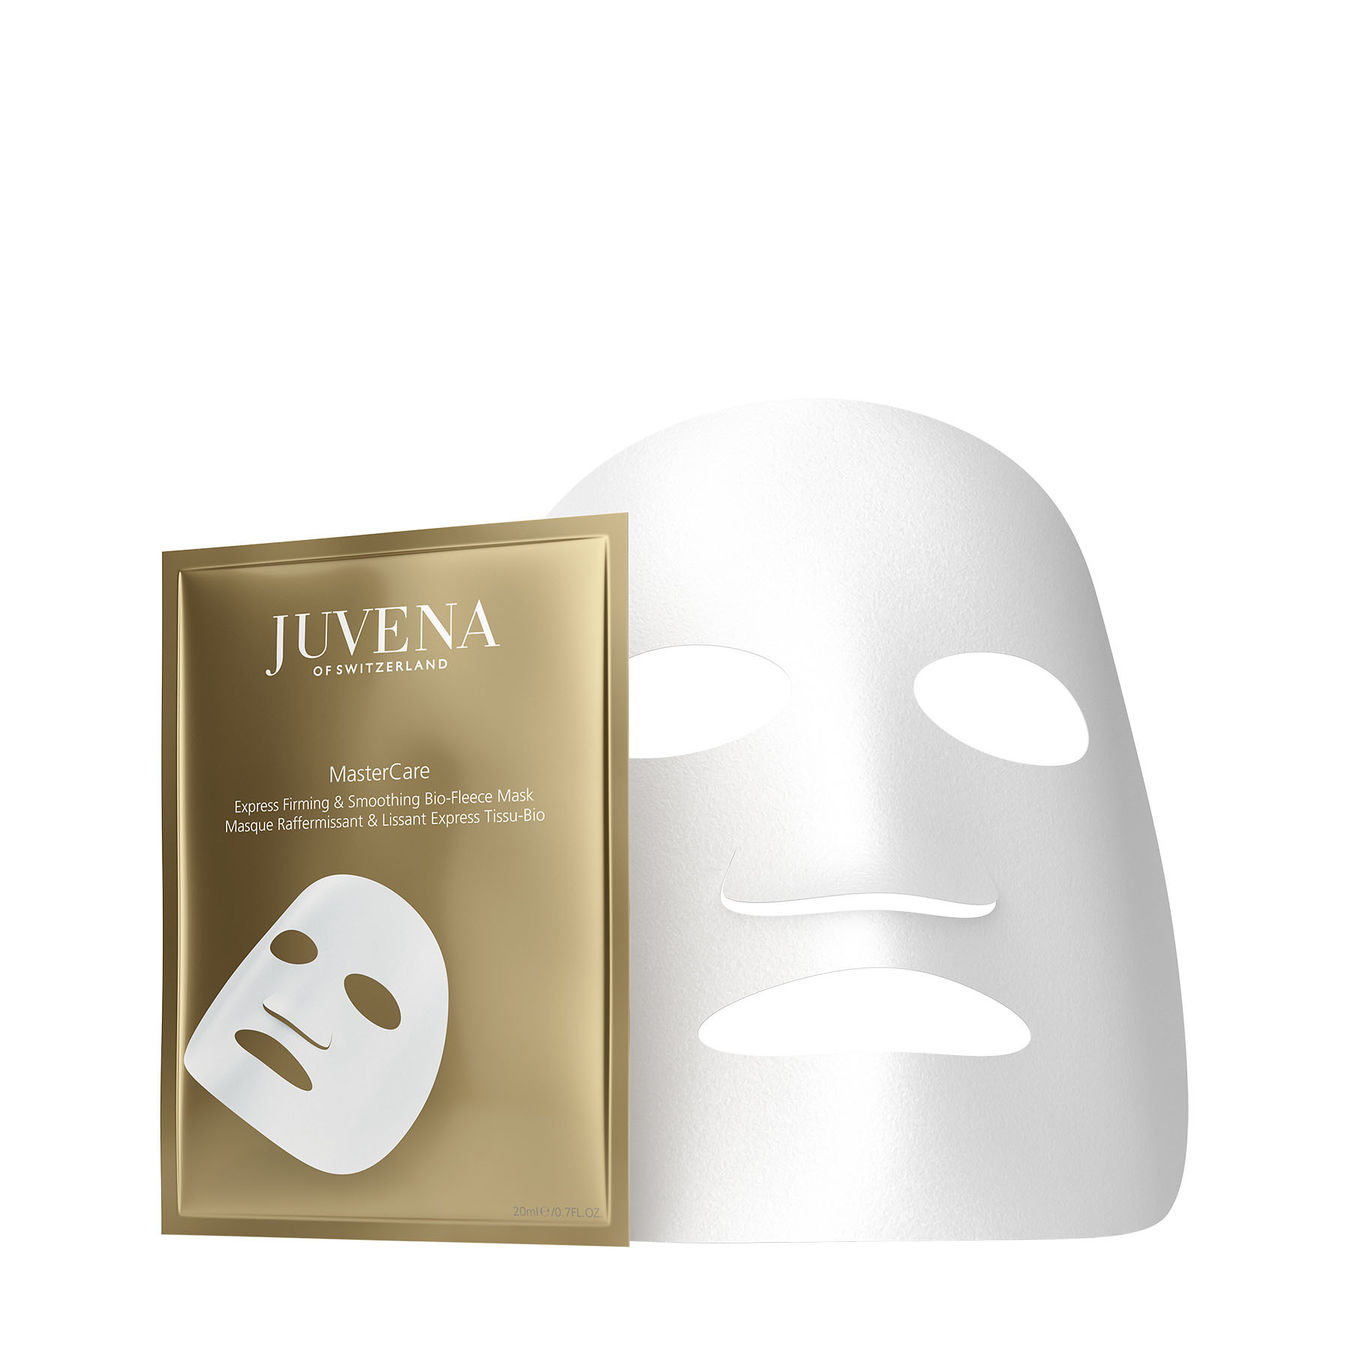 Juvena MasterCare Express Firming & Smoothing Bio-Fleece Mask von Juvena